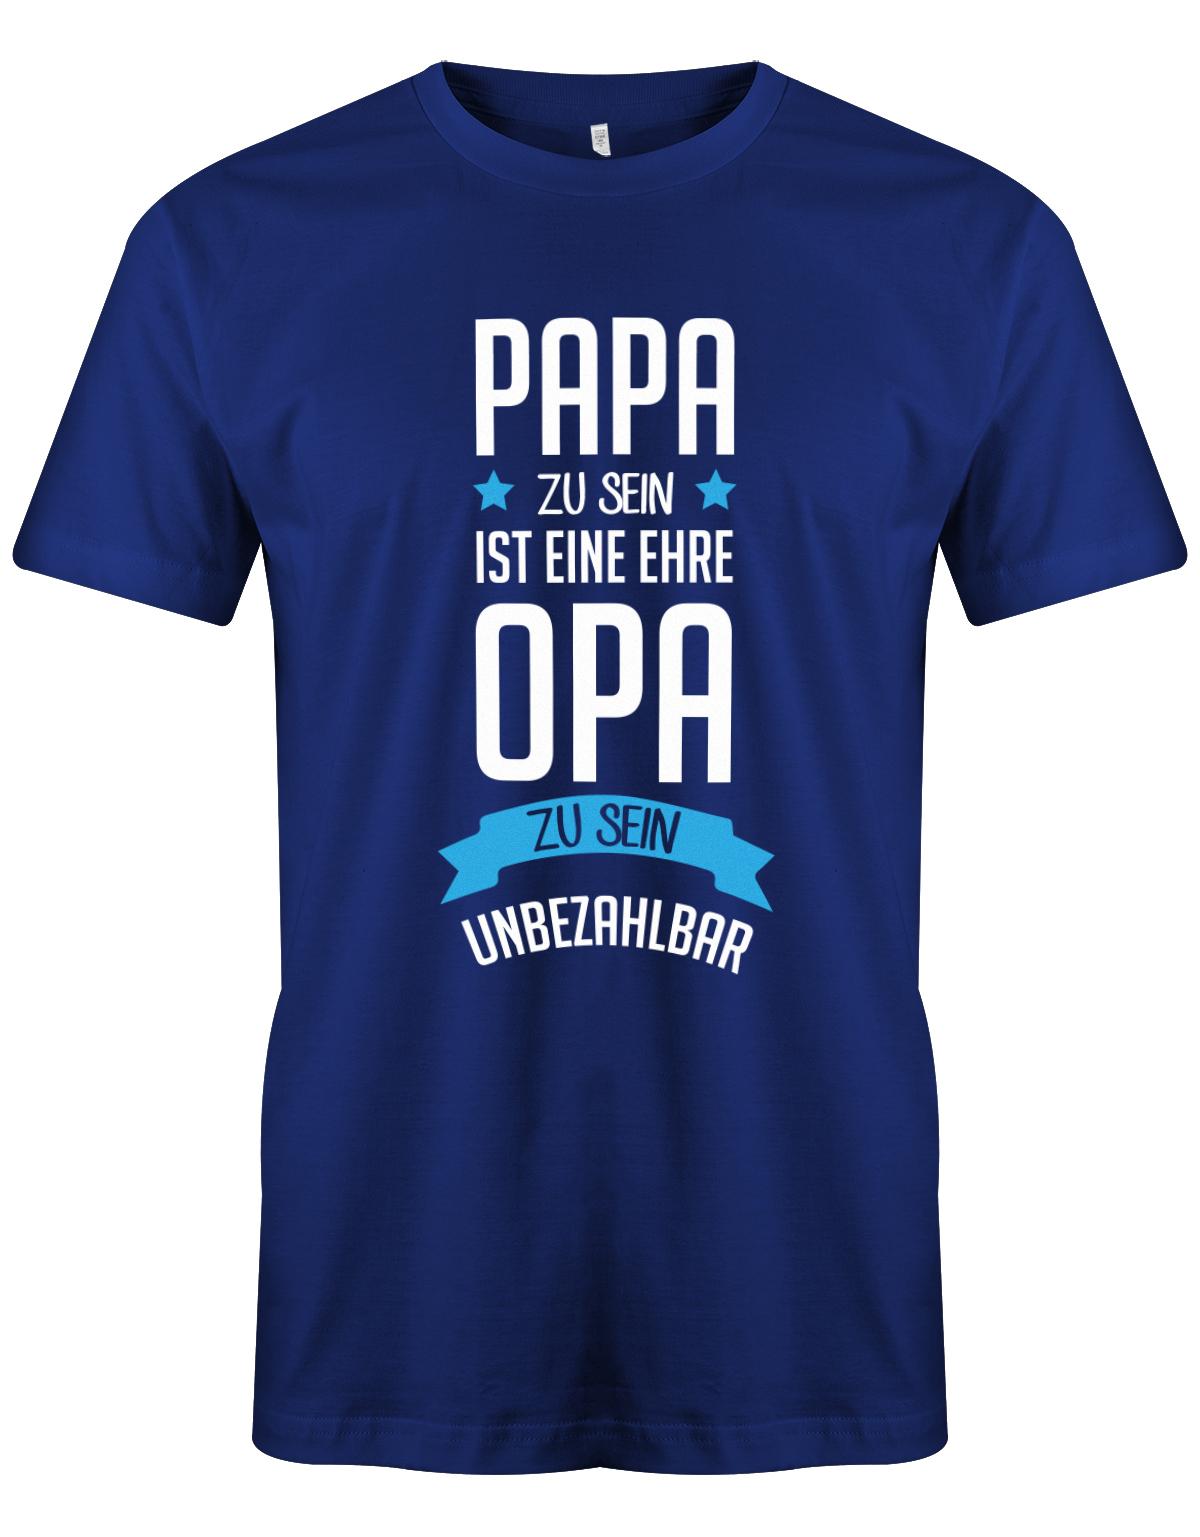 Opa T-Shirt Spruch für den werdenden Opa. Papa zu sein, ist eine Ehre, Opa zu sein unbezahlbar. Royalblau